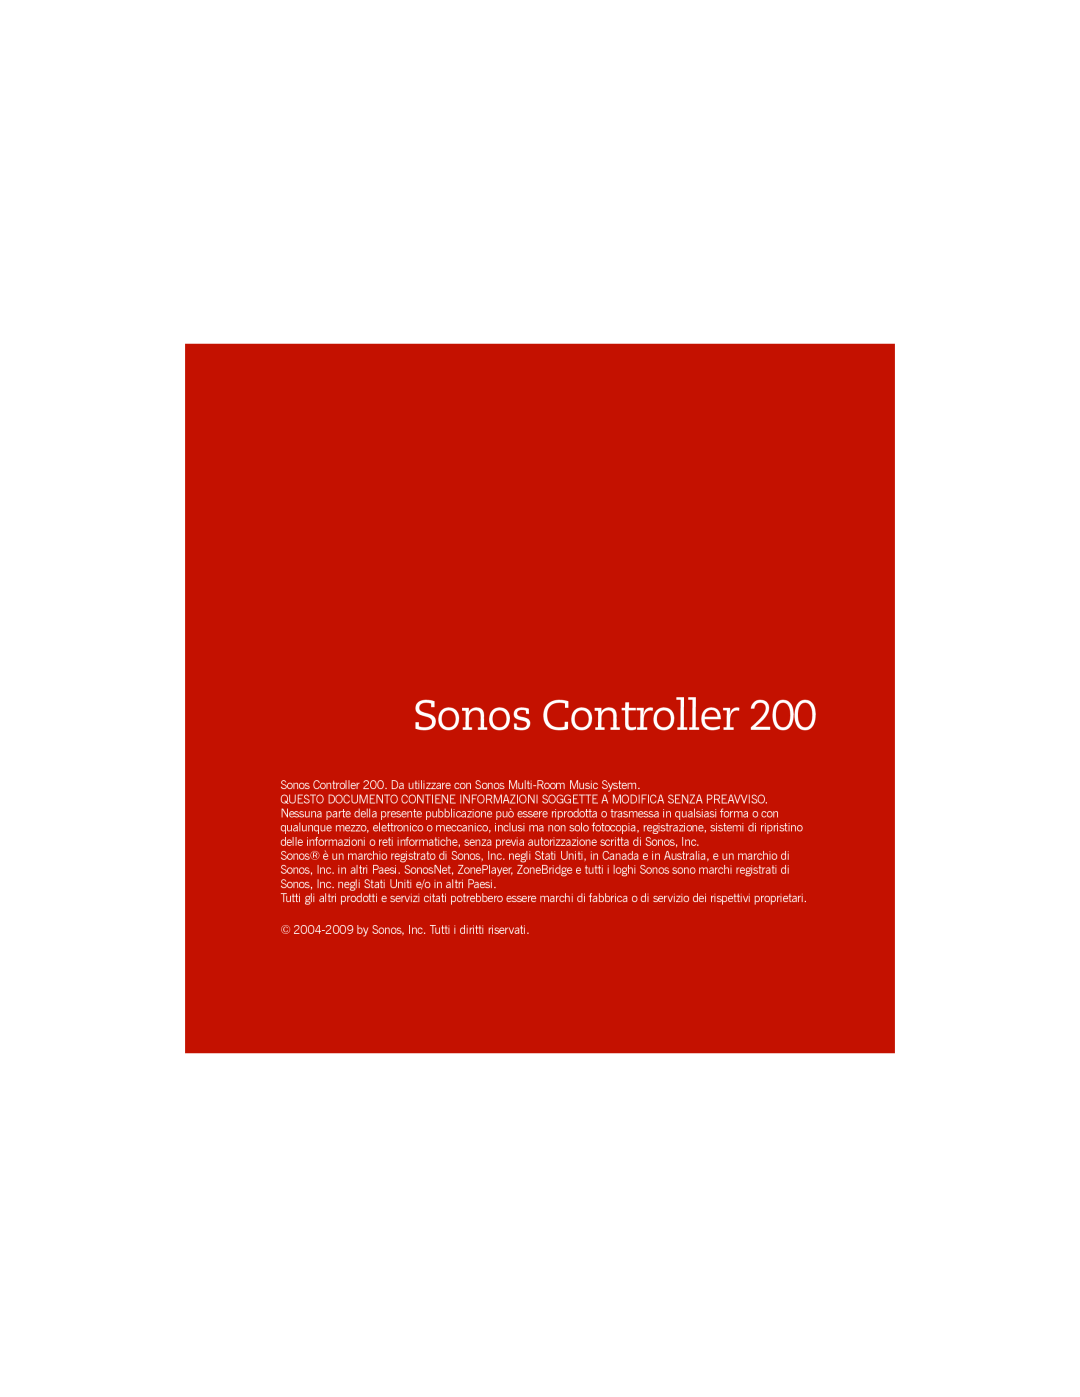 Sonos manual Sonos Controller, 2004-2009by Sonos, Inc. Tutti i diritti riservati 